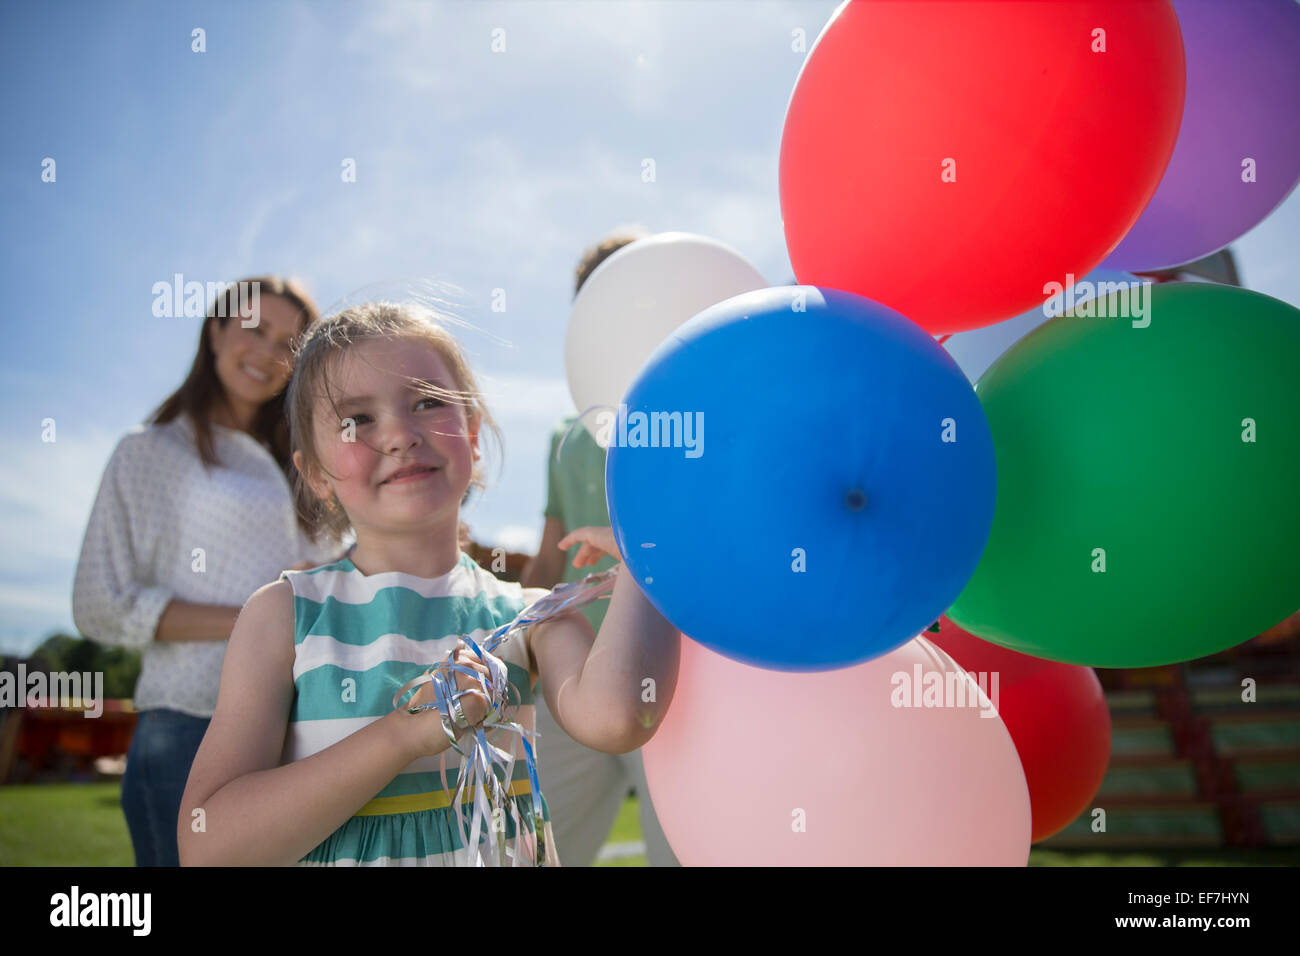 Young Girl holding bouquet de ballons colorés à sunny day Banque D'Images